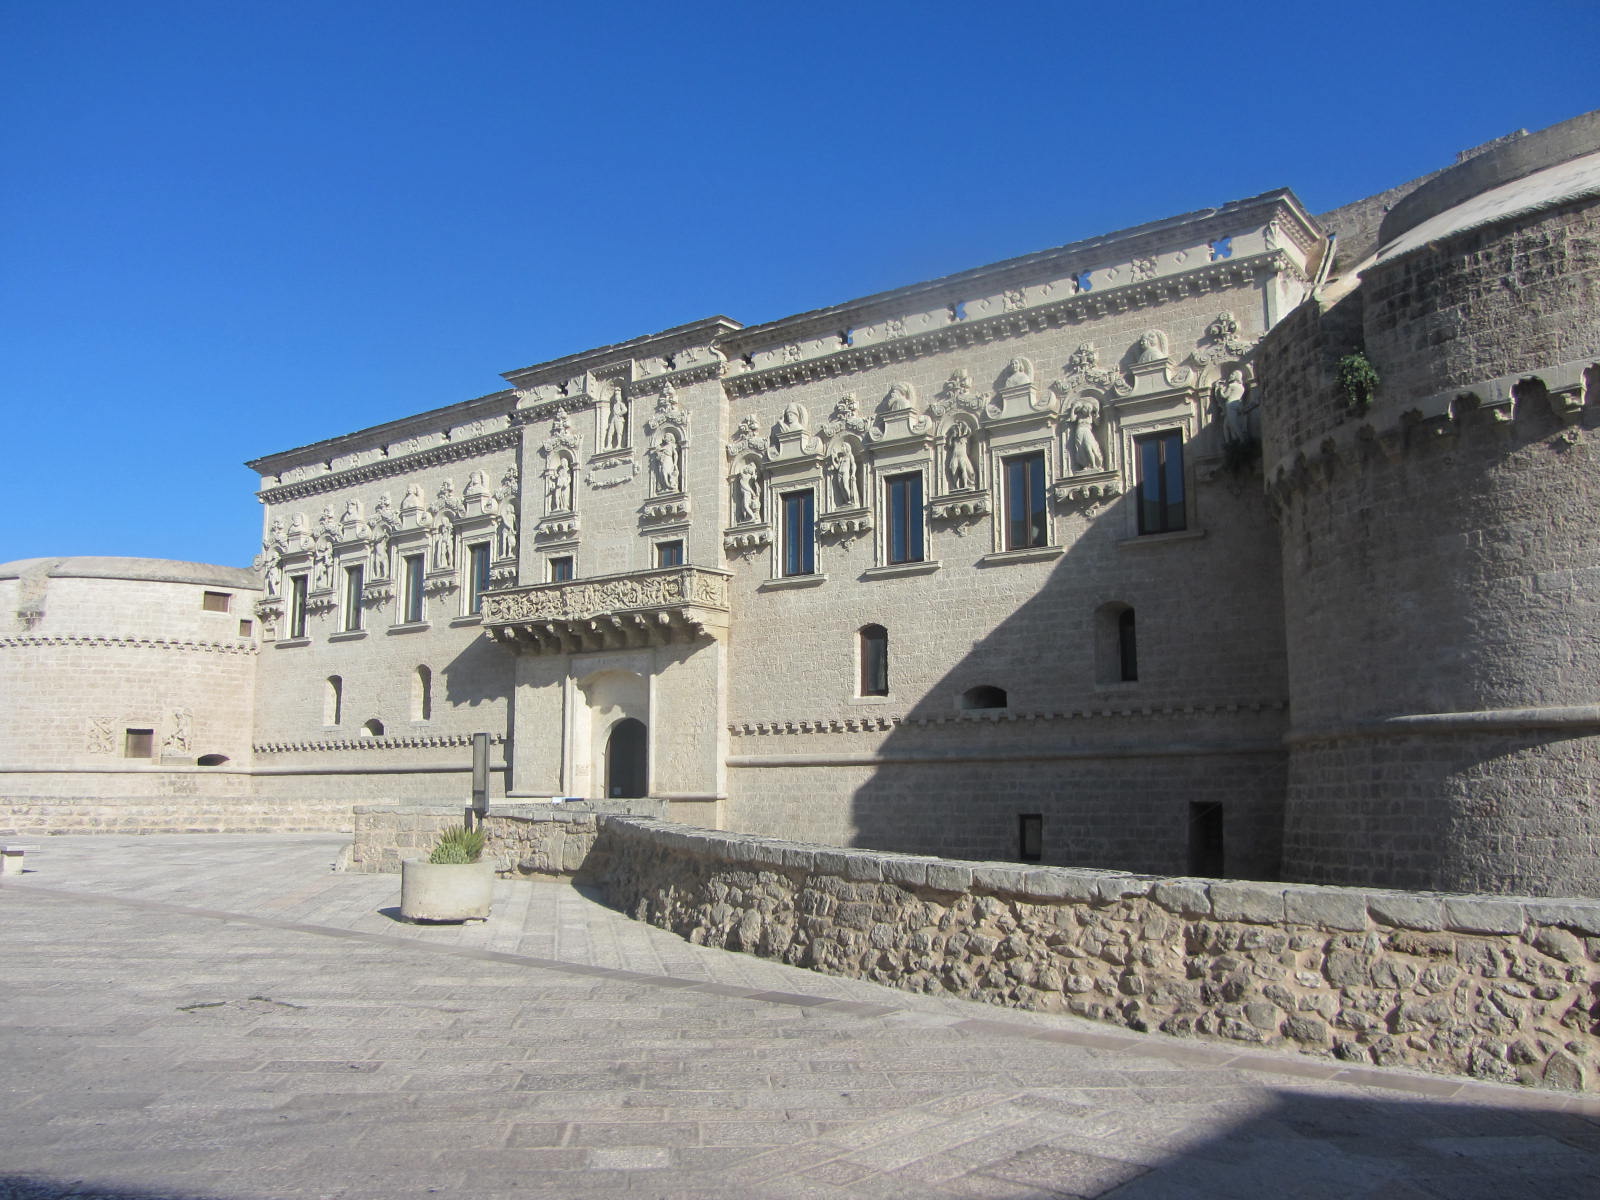 Corigliano D'otranto (le) Castello De'monti Archivio Tci.jpg